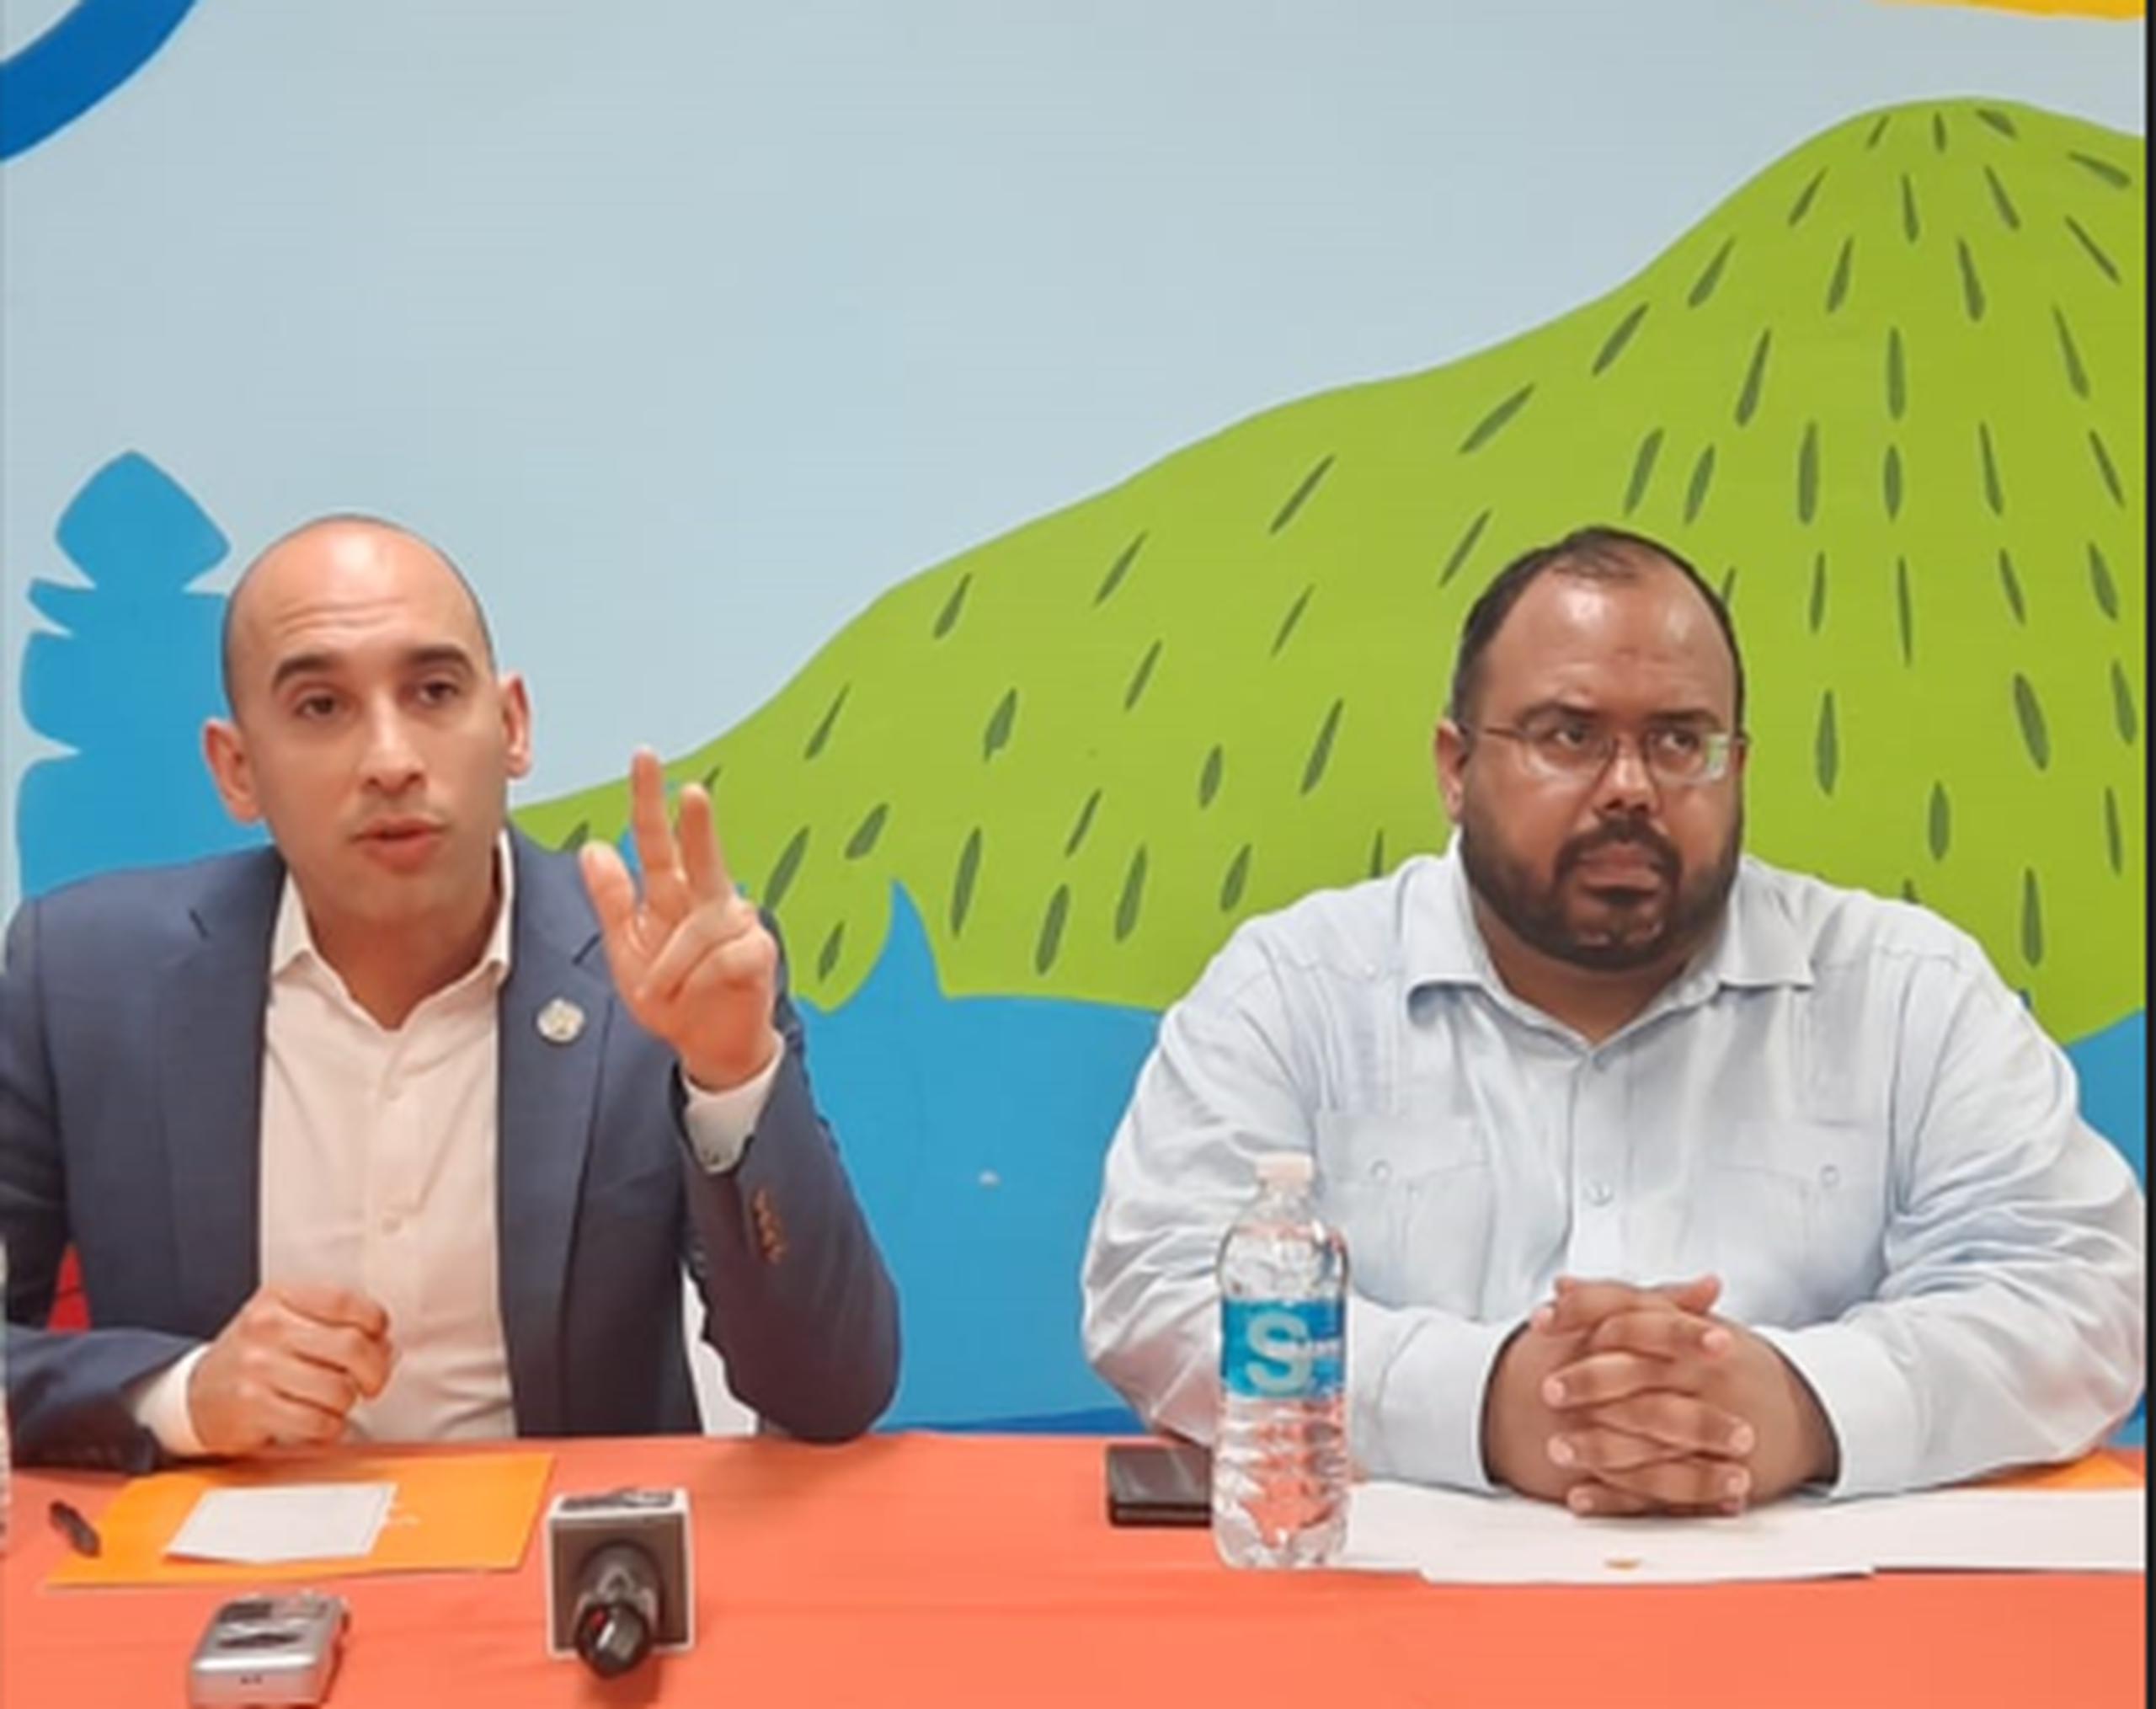 Chris Soto, asesor senior del Secretario de Educación federal (a la izquierda junto a Eliezer Ramos, secretario de Educación de Puerto Rico), destacó el trabajo de Vimenti y Caras con Causa.